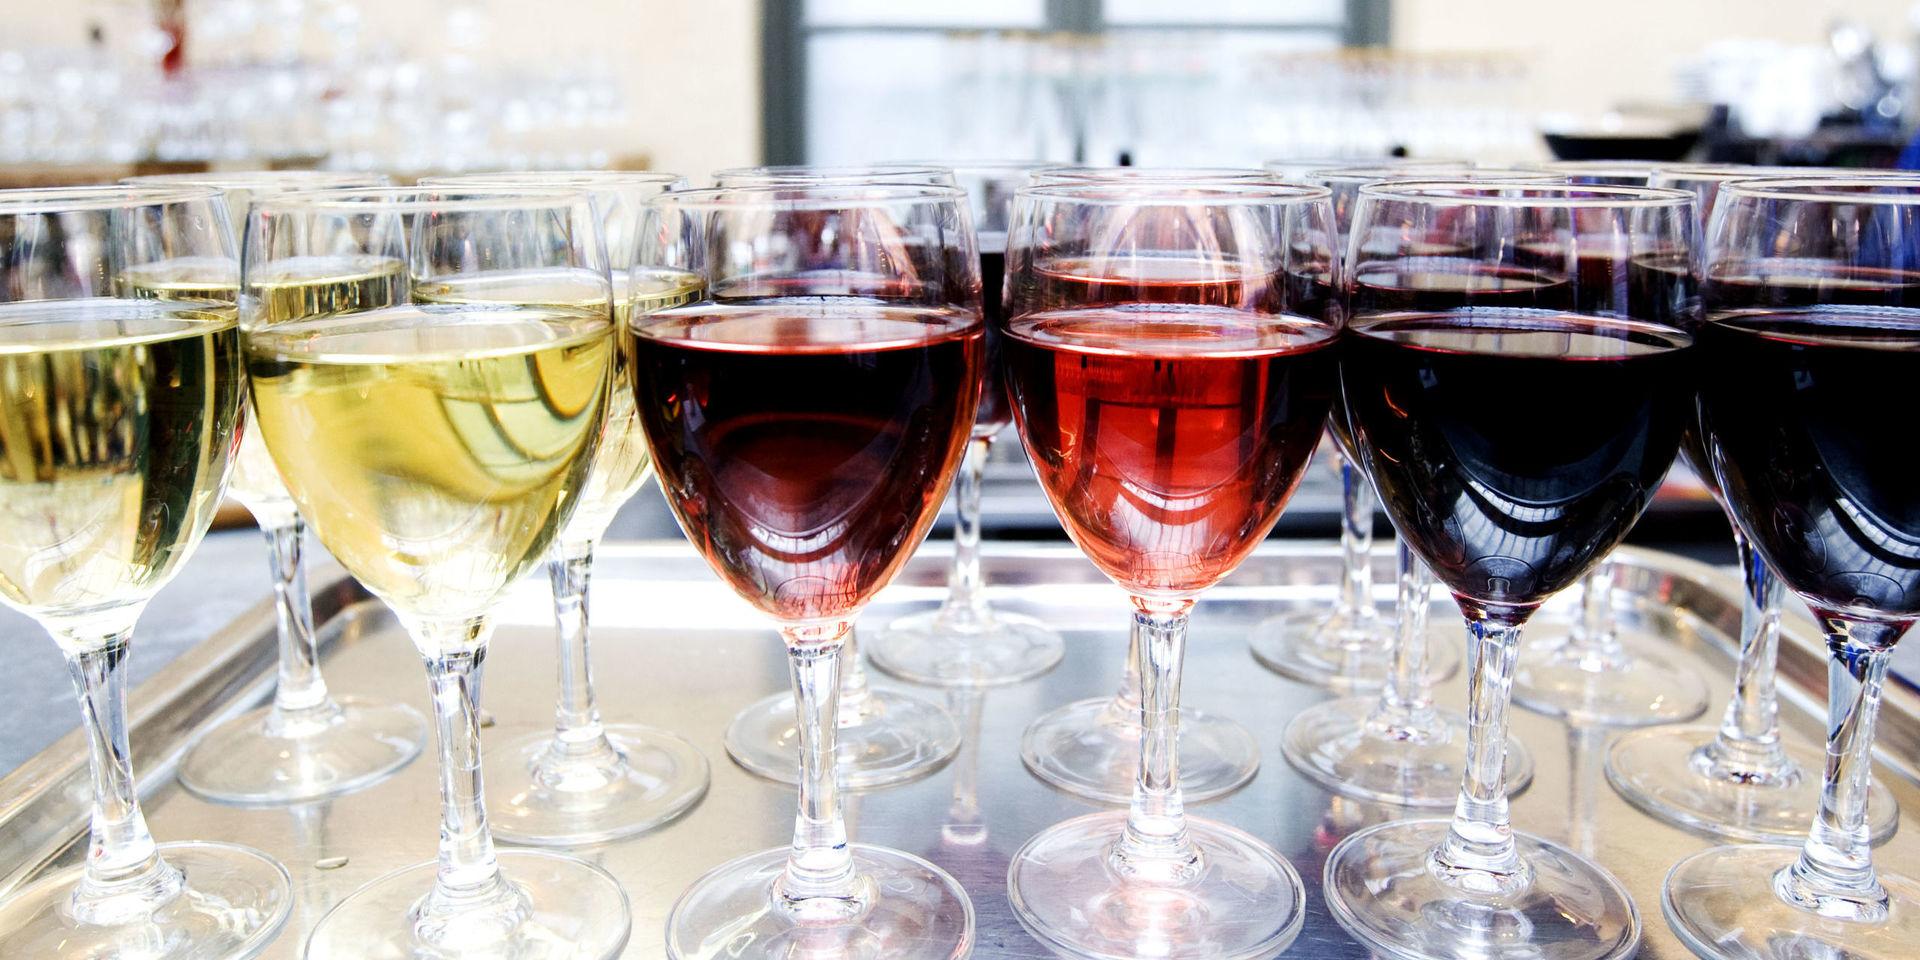 På lördag arrangerar Munskänkarna vinissage på restaurang Strand, på Kulturhuset Skagerack.